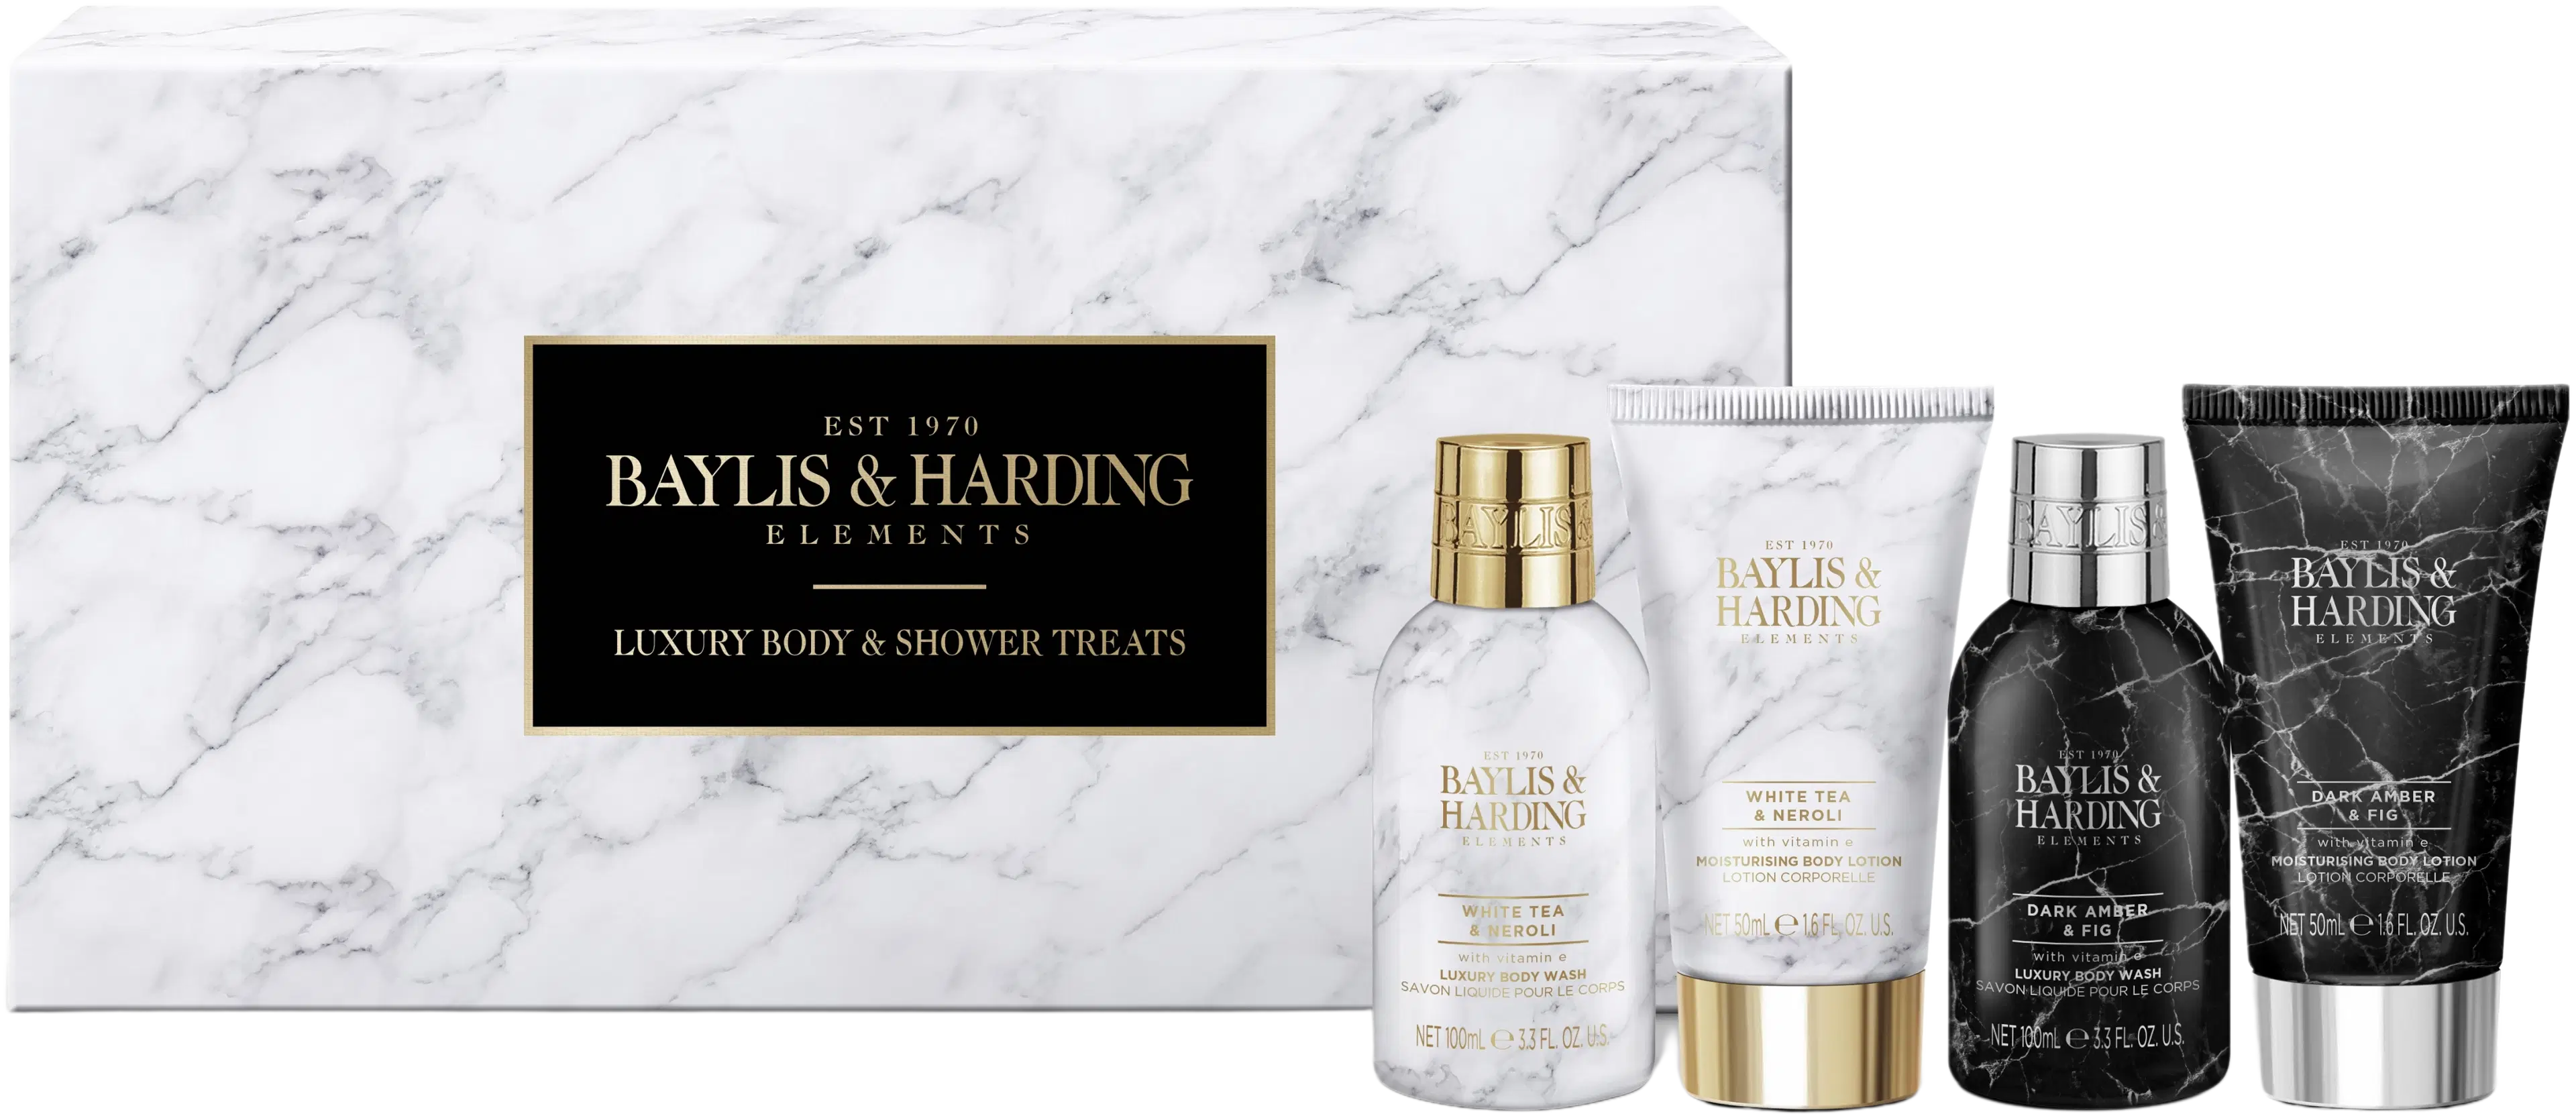 Baylis & Harding Elements Luxury Body & Shower Treats